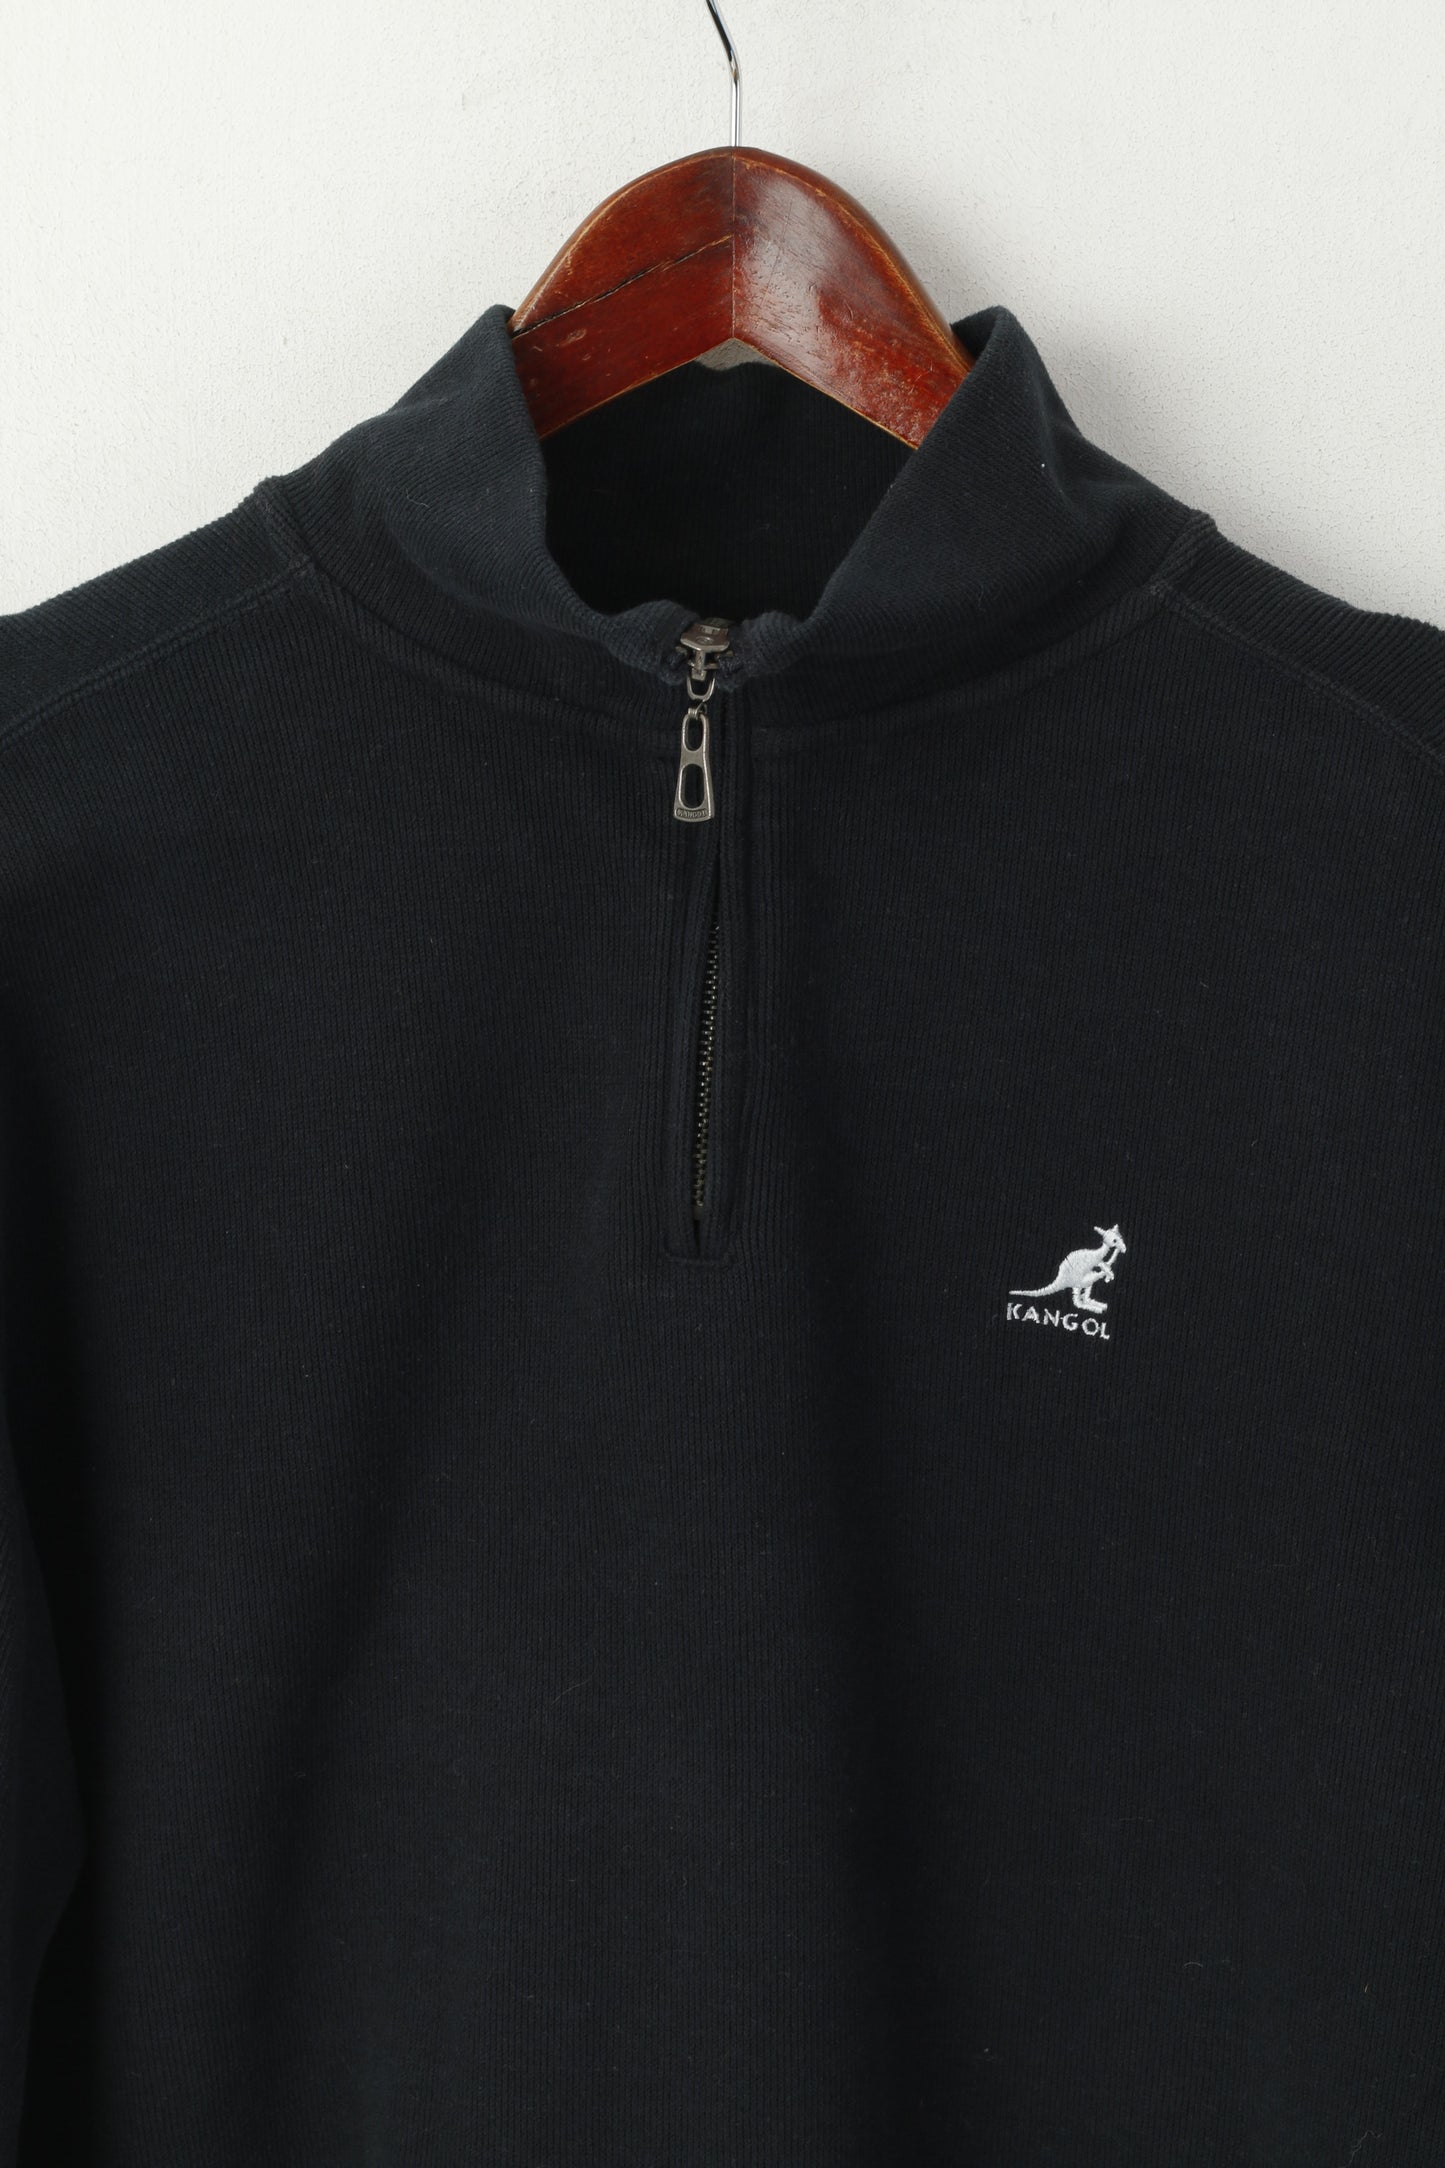 Kangol Men S Sweatshirt Black Pullover Cotton Vintage Zip Neck Sport Top